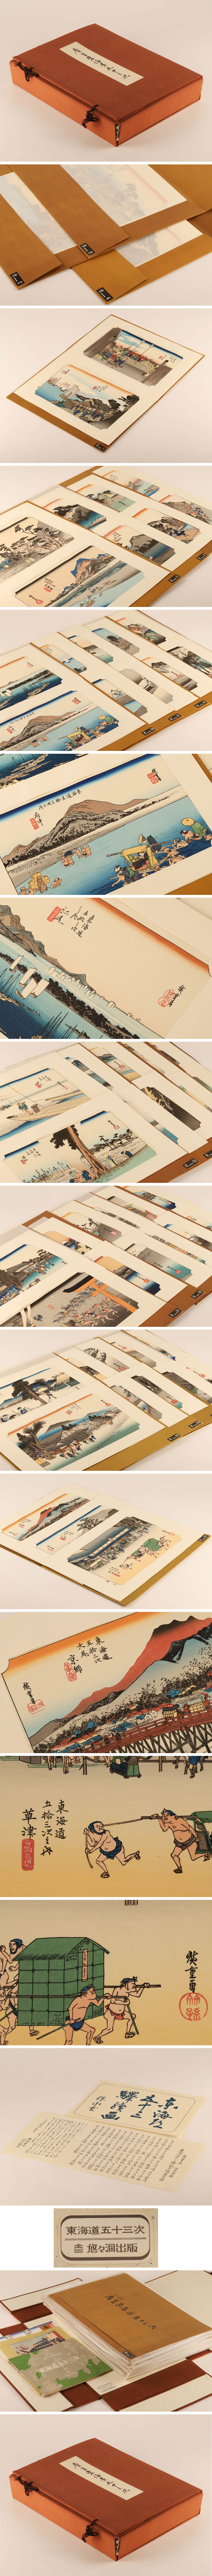 即納歌川広重 東海道五十三次 手摺木版画 悠々洞出版 TD512 木版画